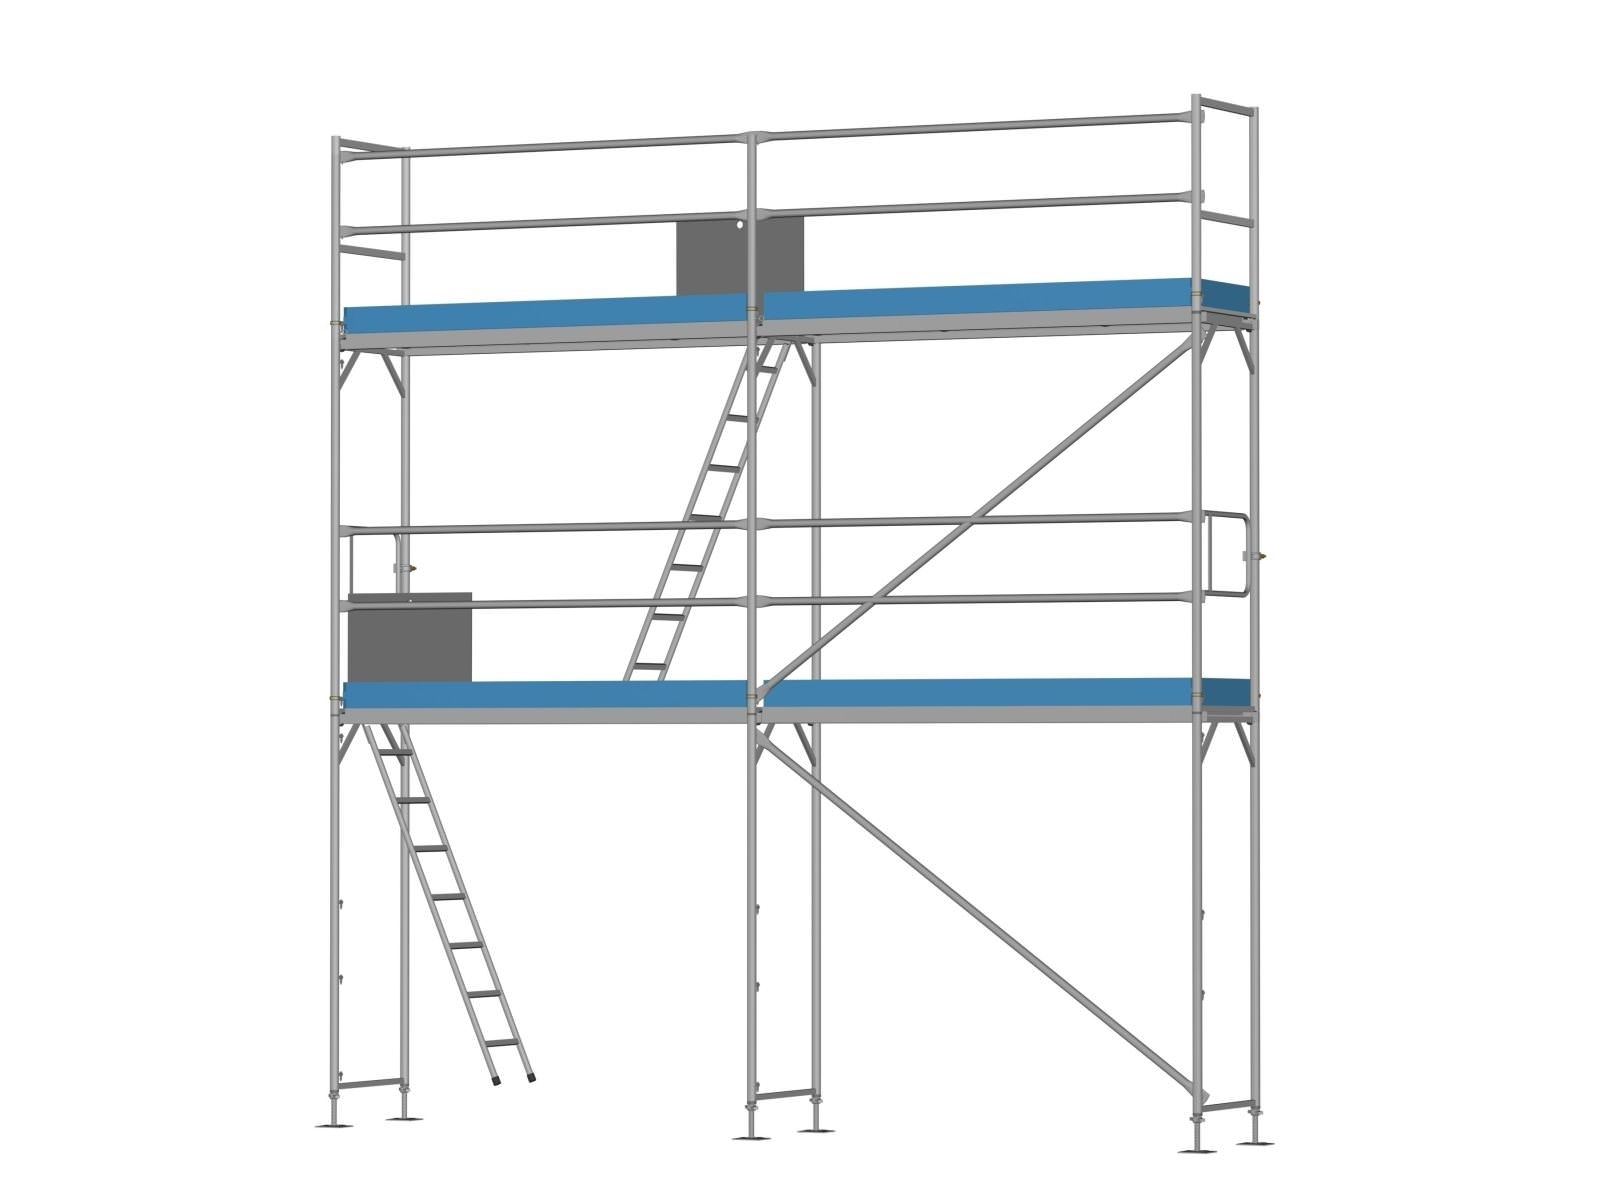 Stahl Traufseitengerüst 30 m² - 2,5 m Felder - 5 m lang - 6 m Arbeitshöhe - Komplettpaket